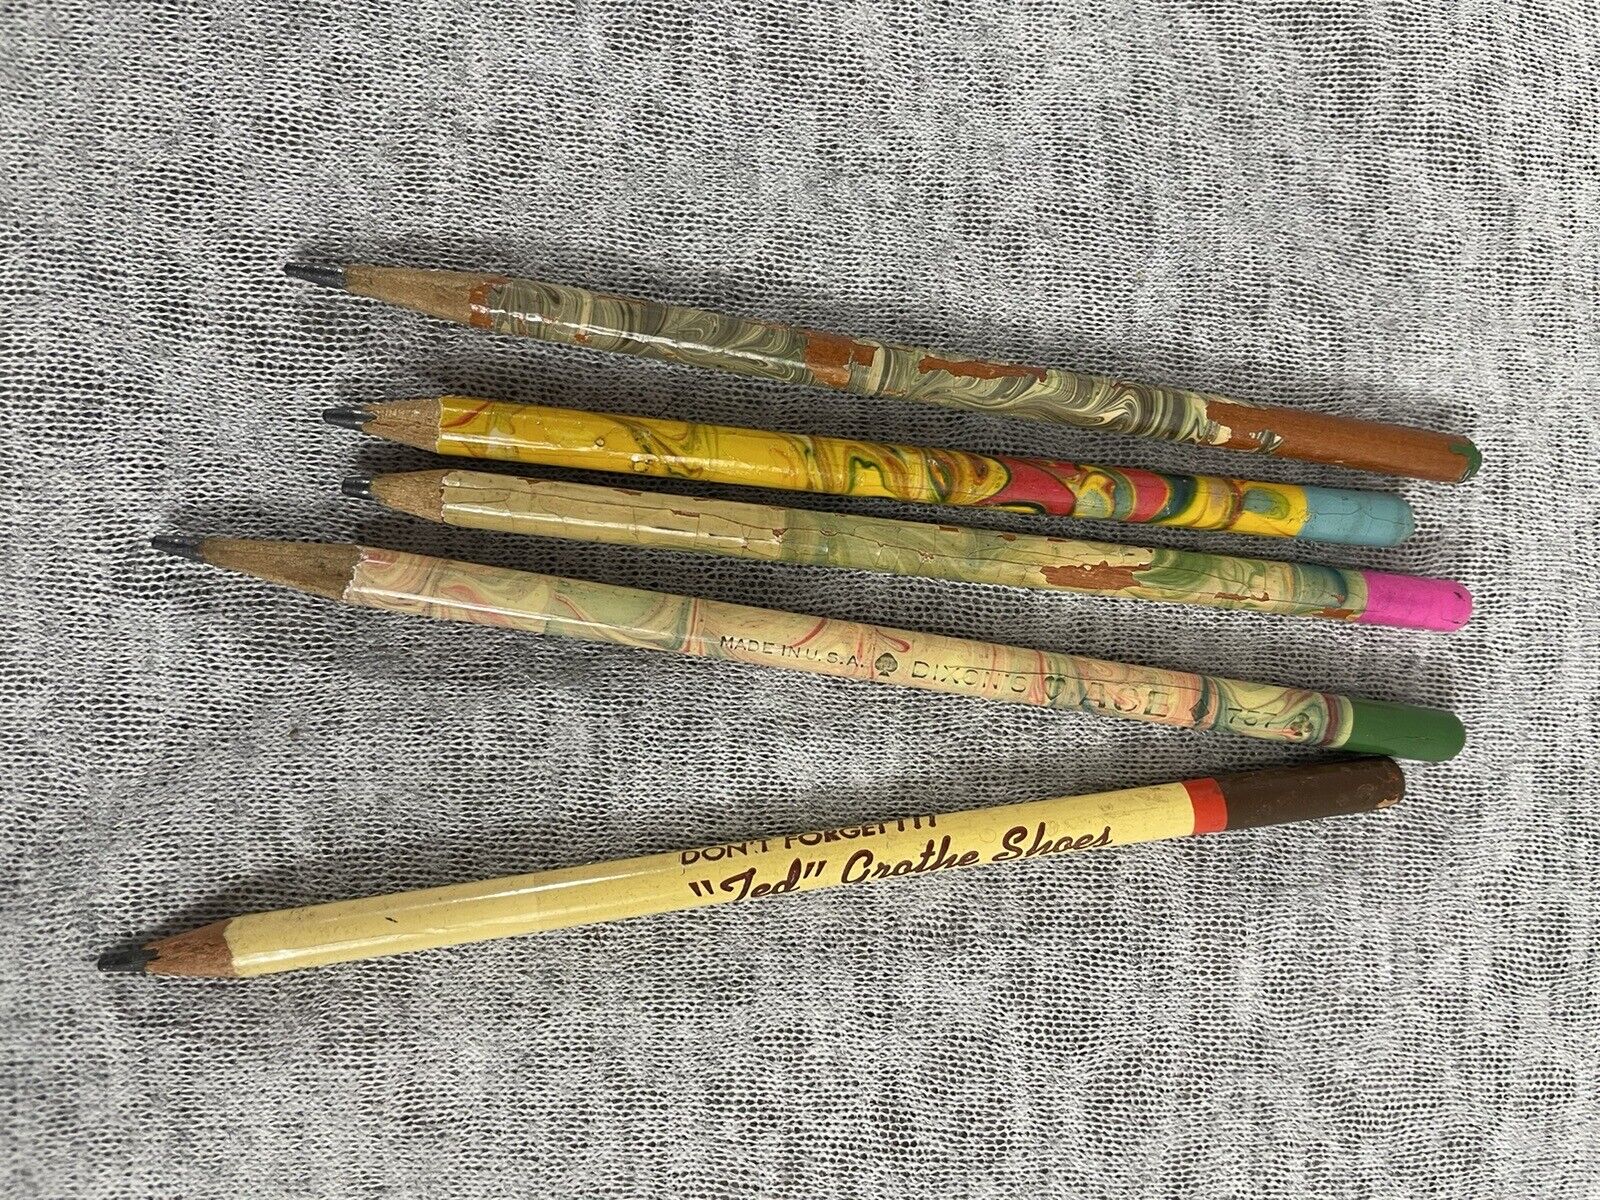 Rare Dixon Ace 757 Tie Dye 1920s Wooden Pencils Antique